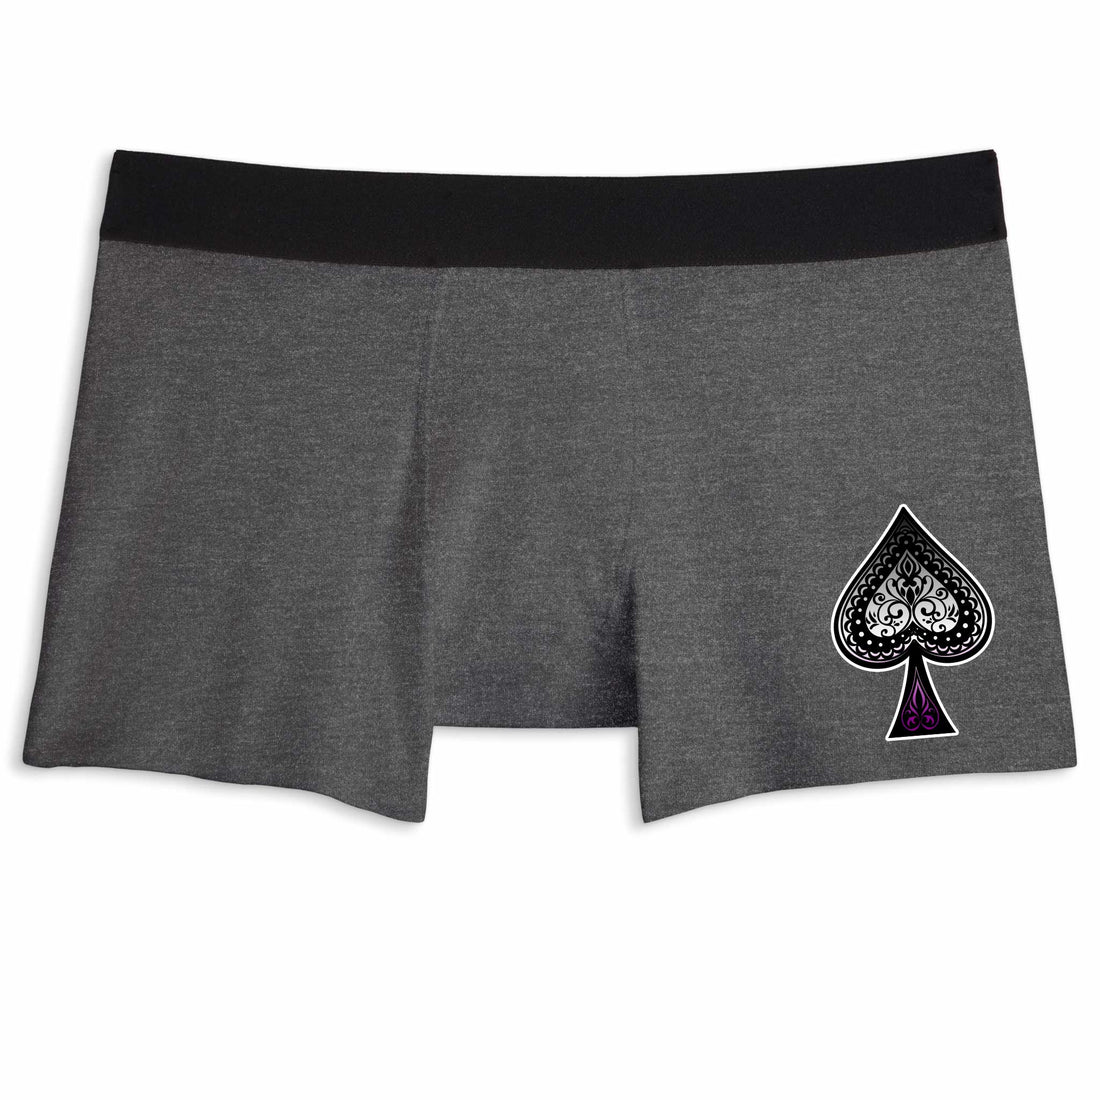 Ace of Spades | Boxer Briefs Underwear